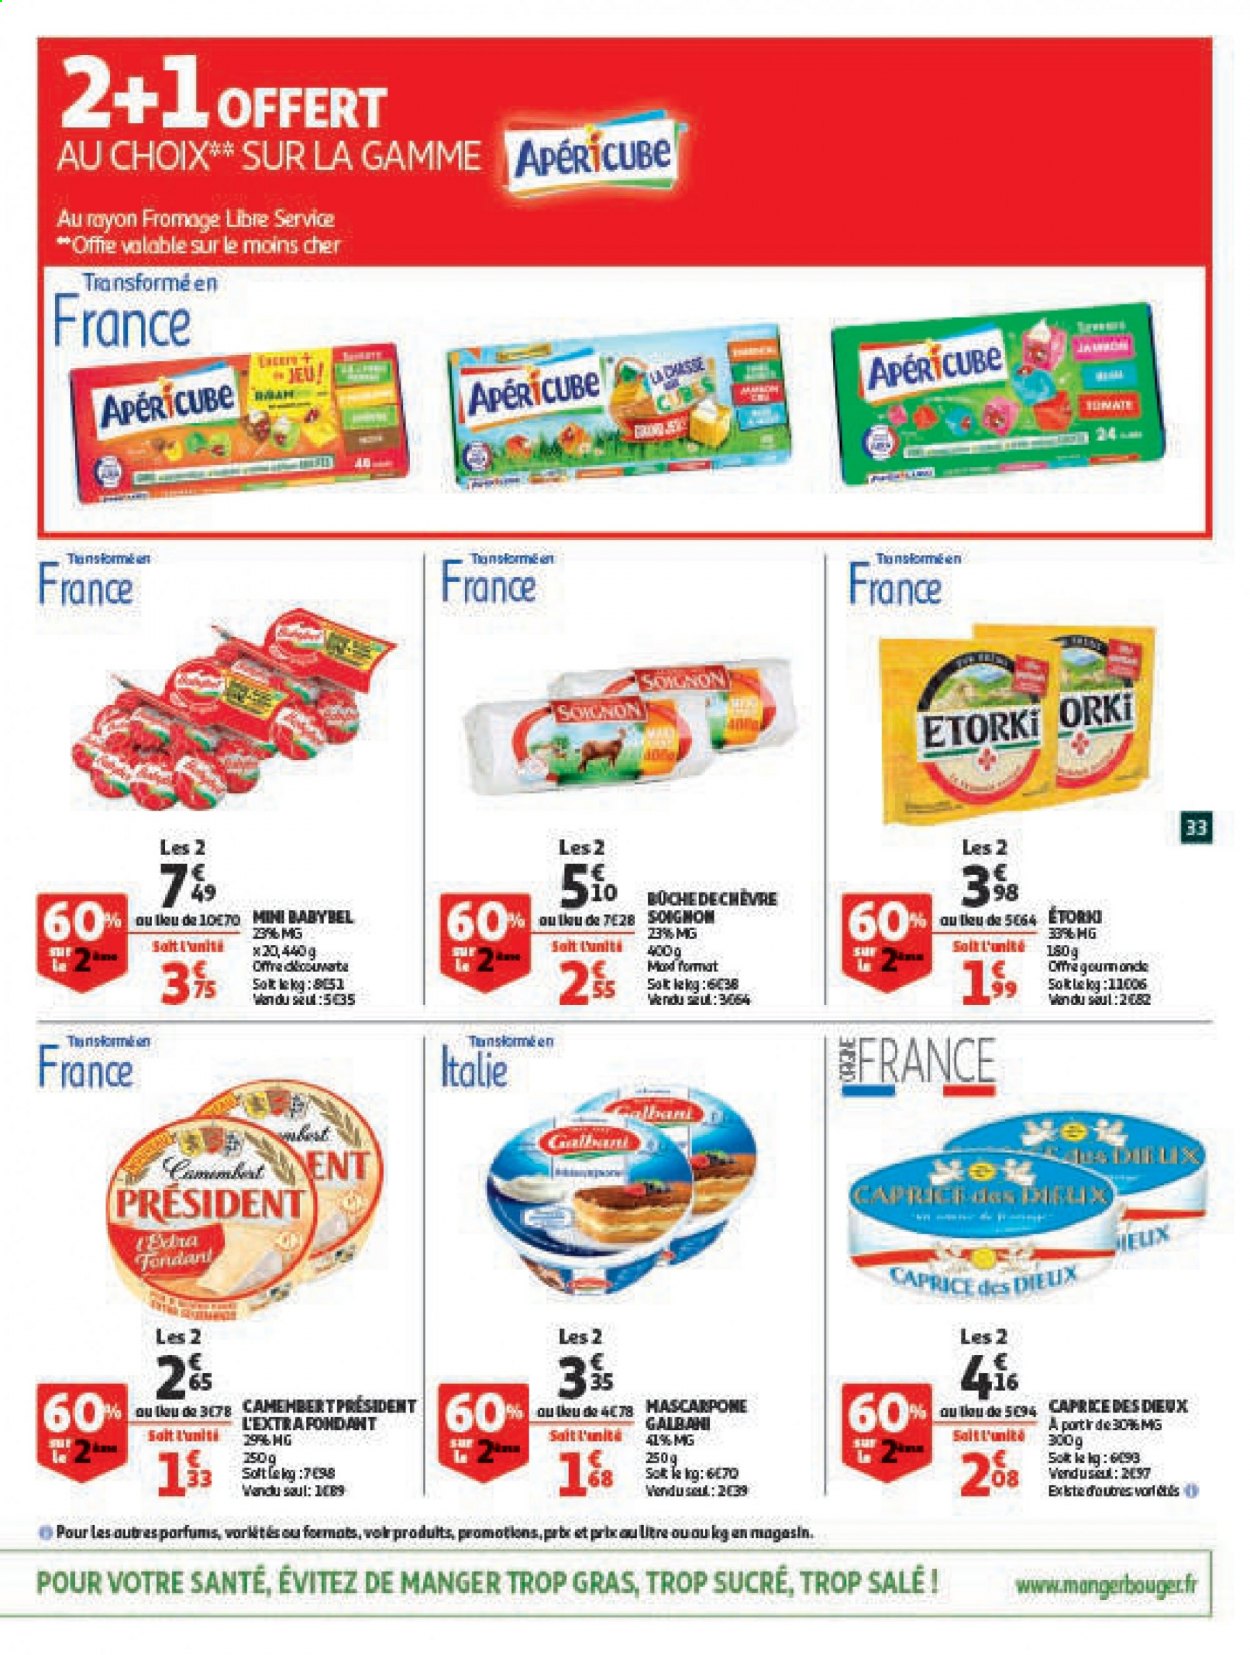 thumbnail - Catalogue Auchan - 24/03/2021 - 05/04/2021 - Produits soldés - jeu, Babybel, fromage, Caprice des Dieux, Président, apéricube. Page 33.